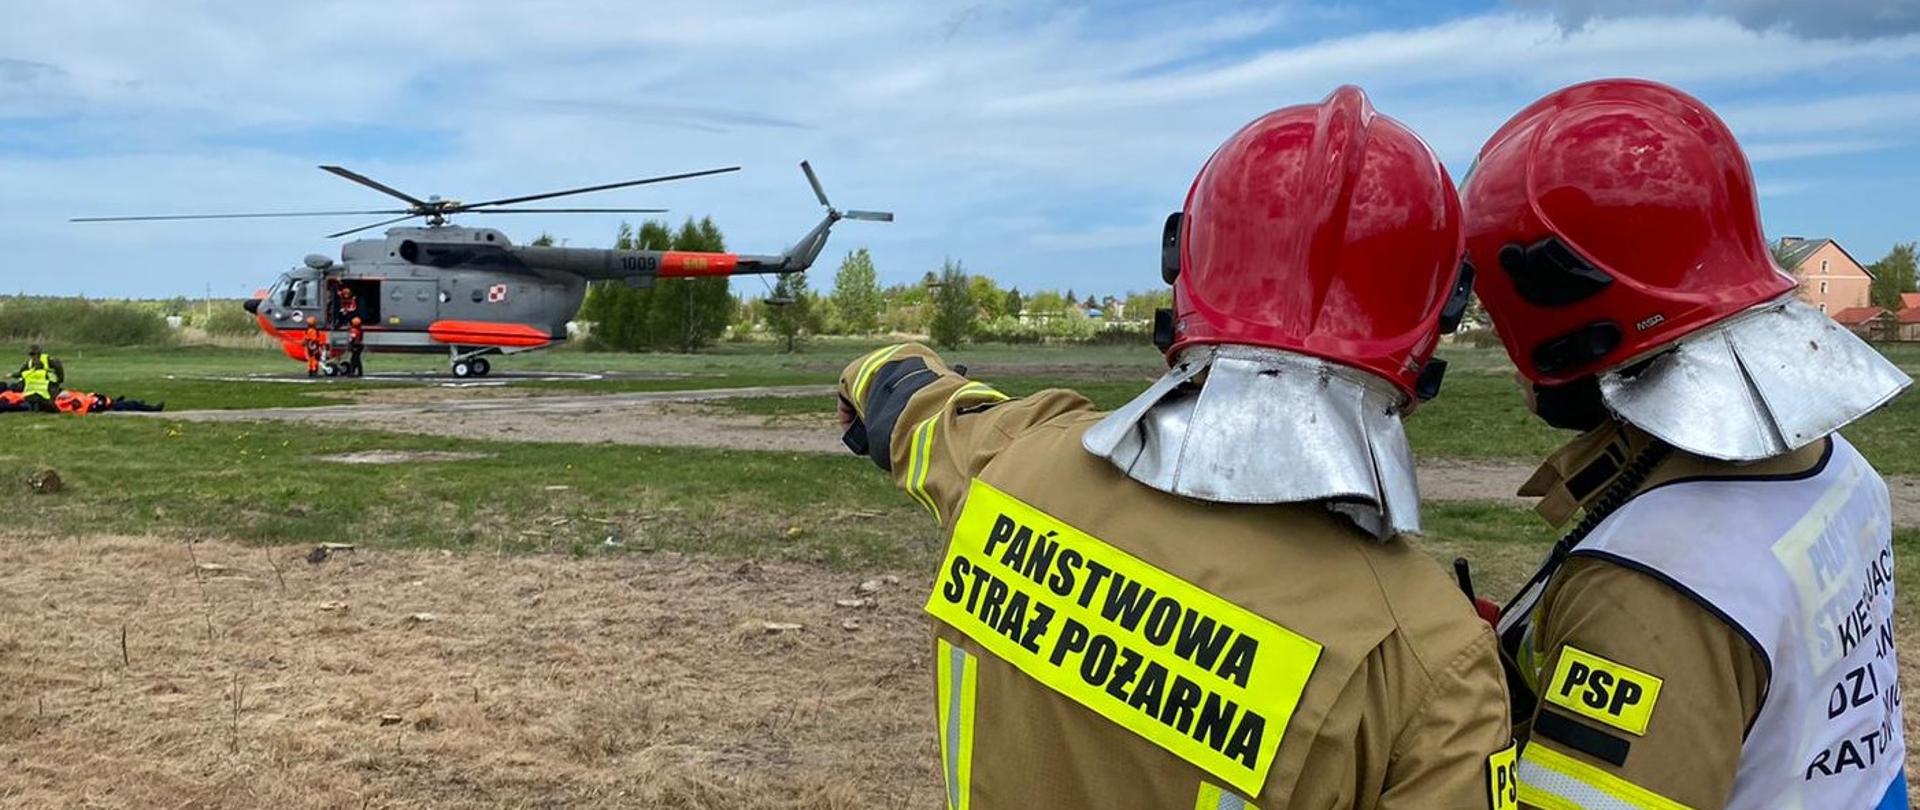 Na zdjęciu dwóch strażaków wskazuje na helikopter na lądowisku